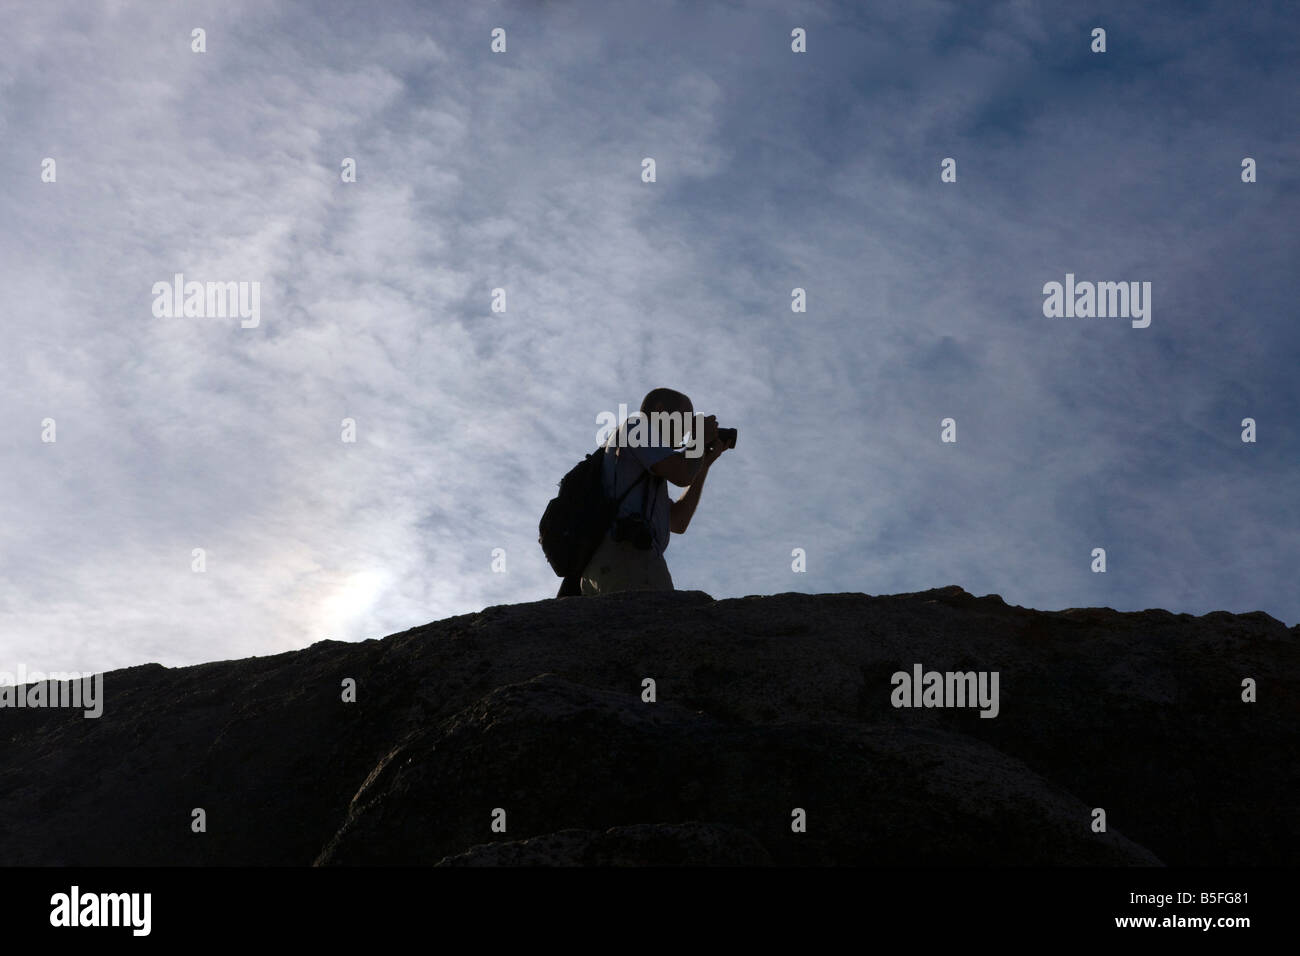 Silohuette d'un photographe masculin contre un ciel bleu profond, vieille montagne Rag, Shenandoah National Park, en Virginie. Banque D'Images